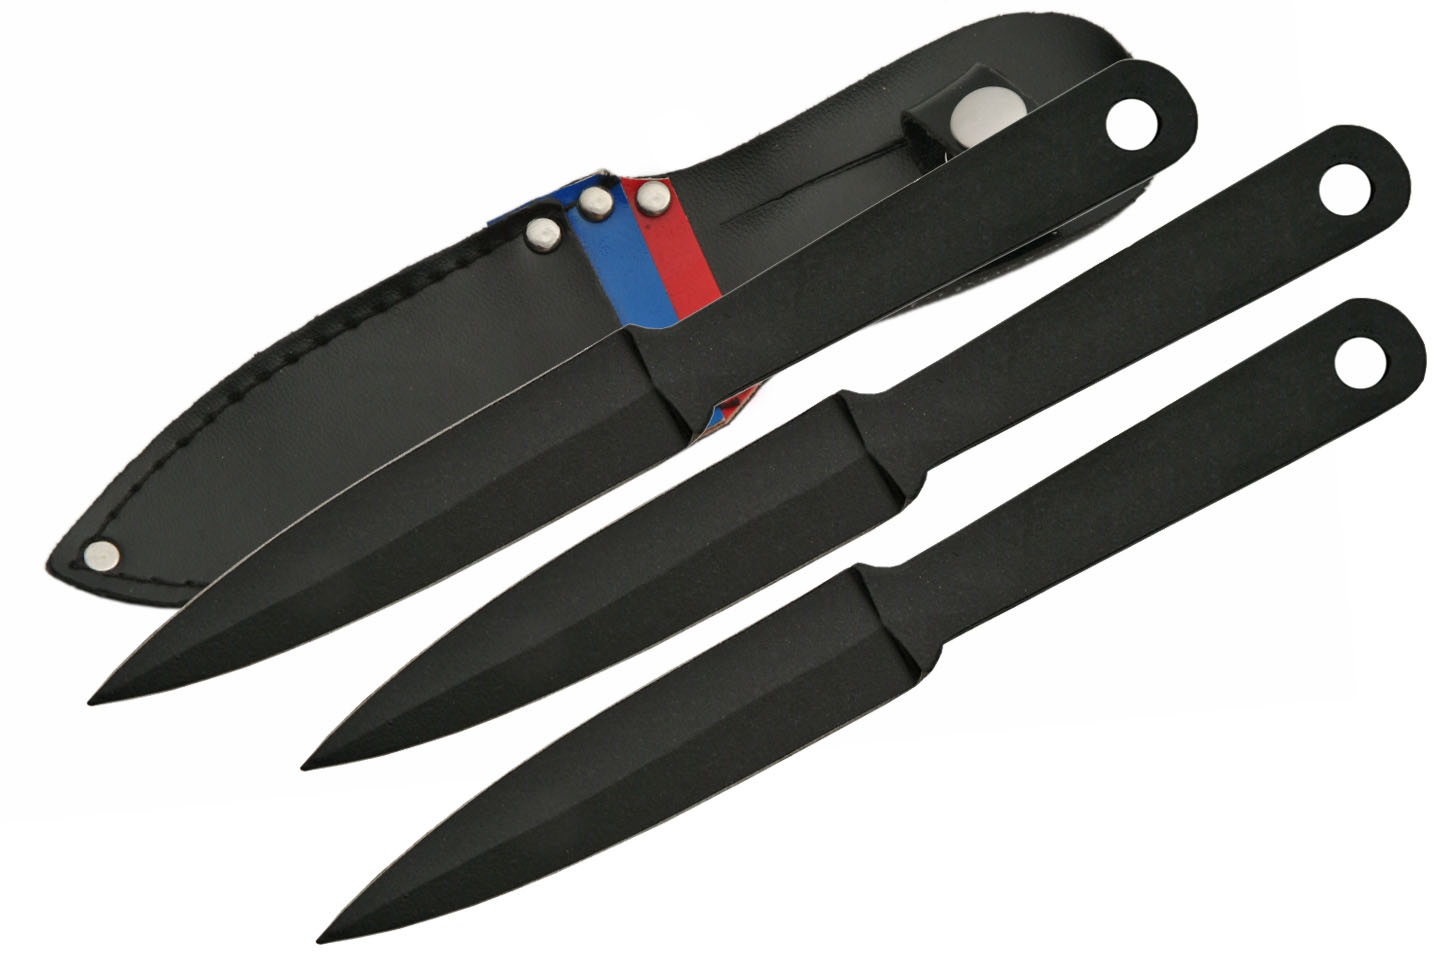 KNIFE - 203123 3pc Throwing Set